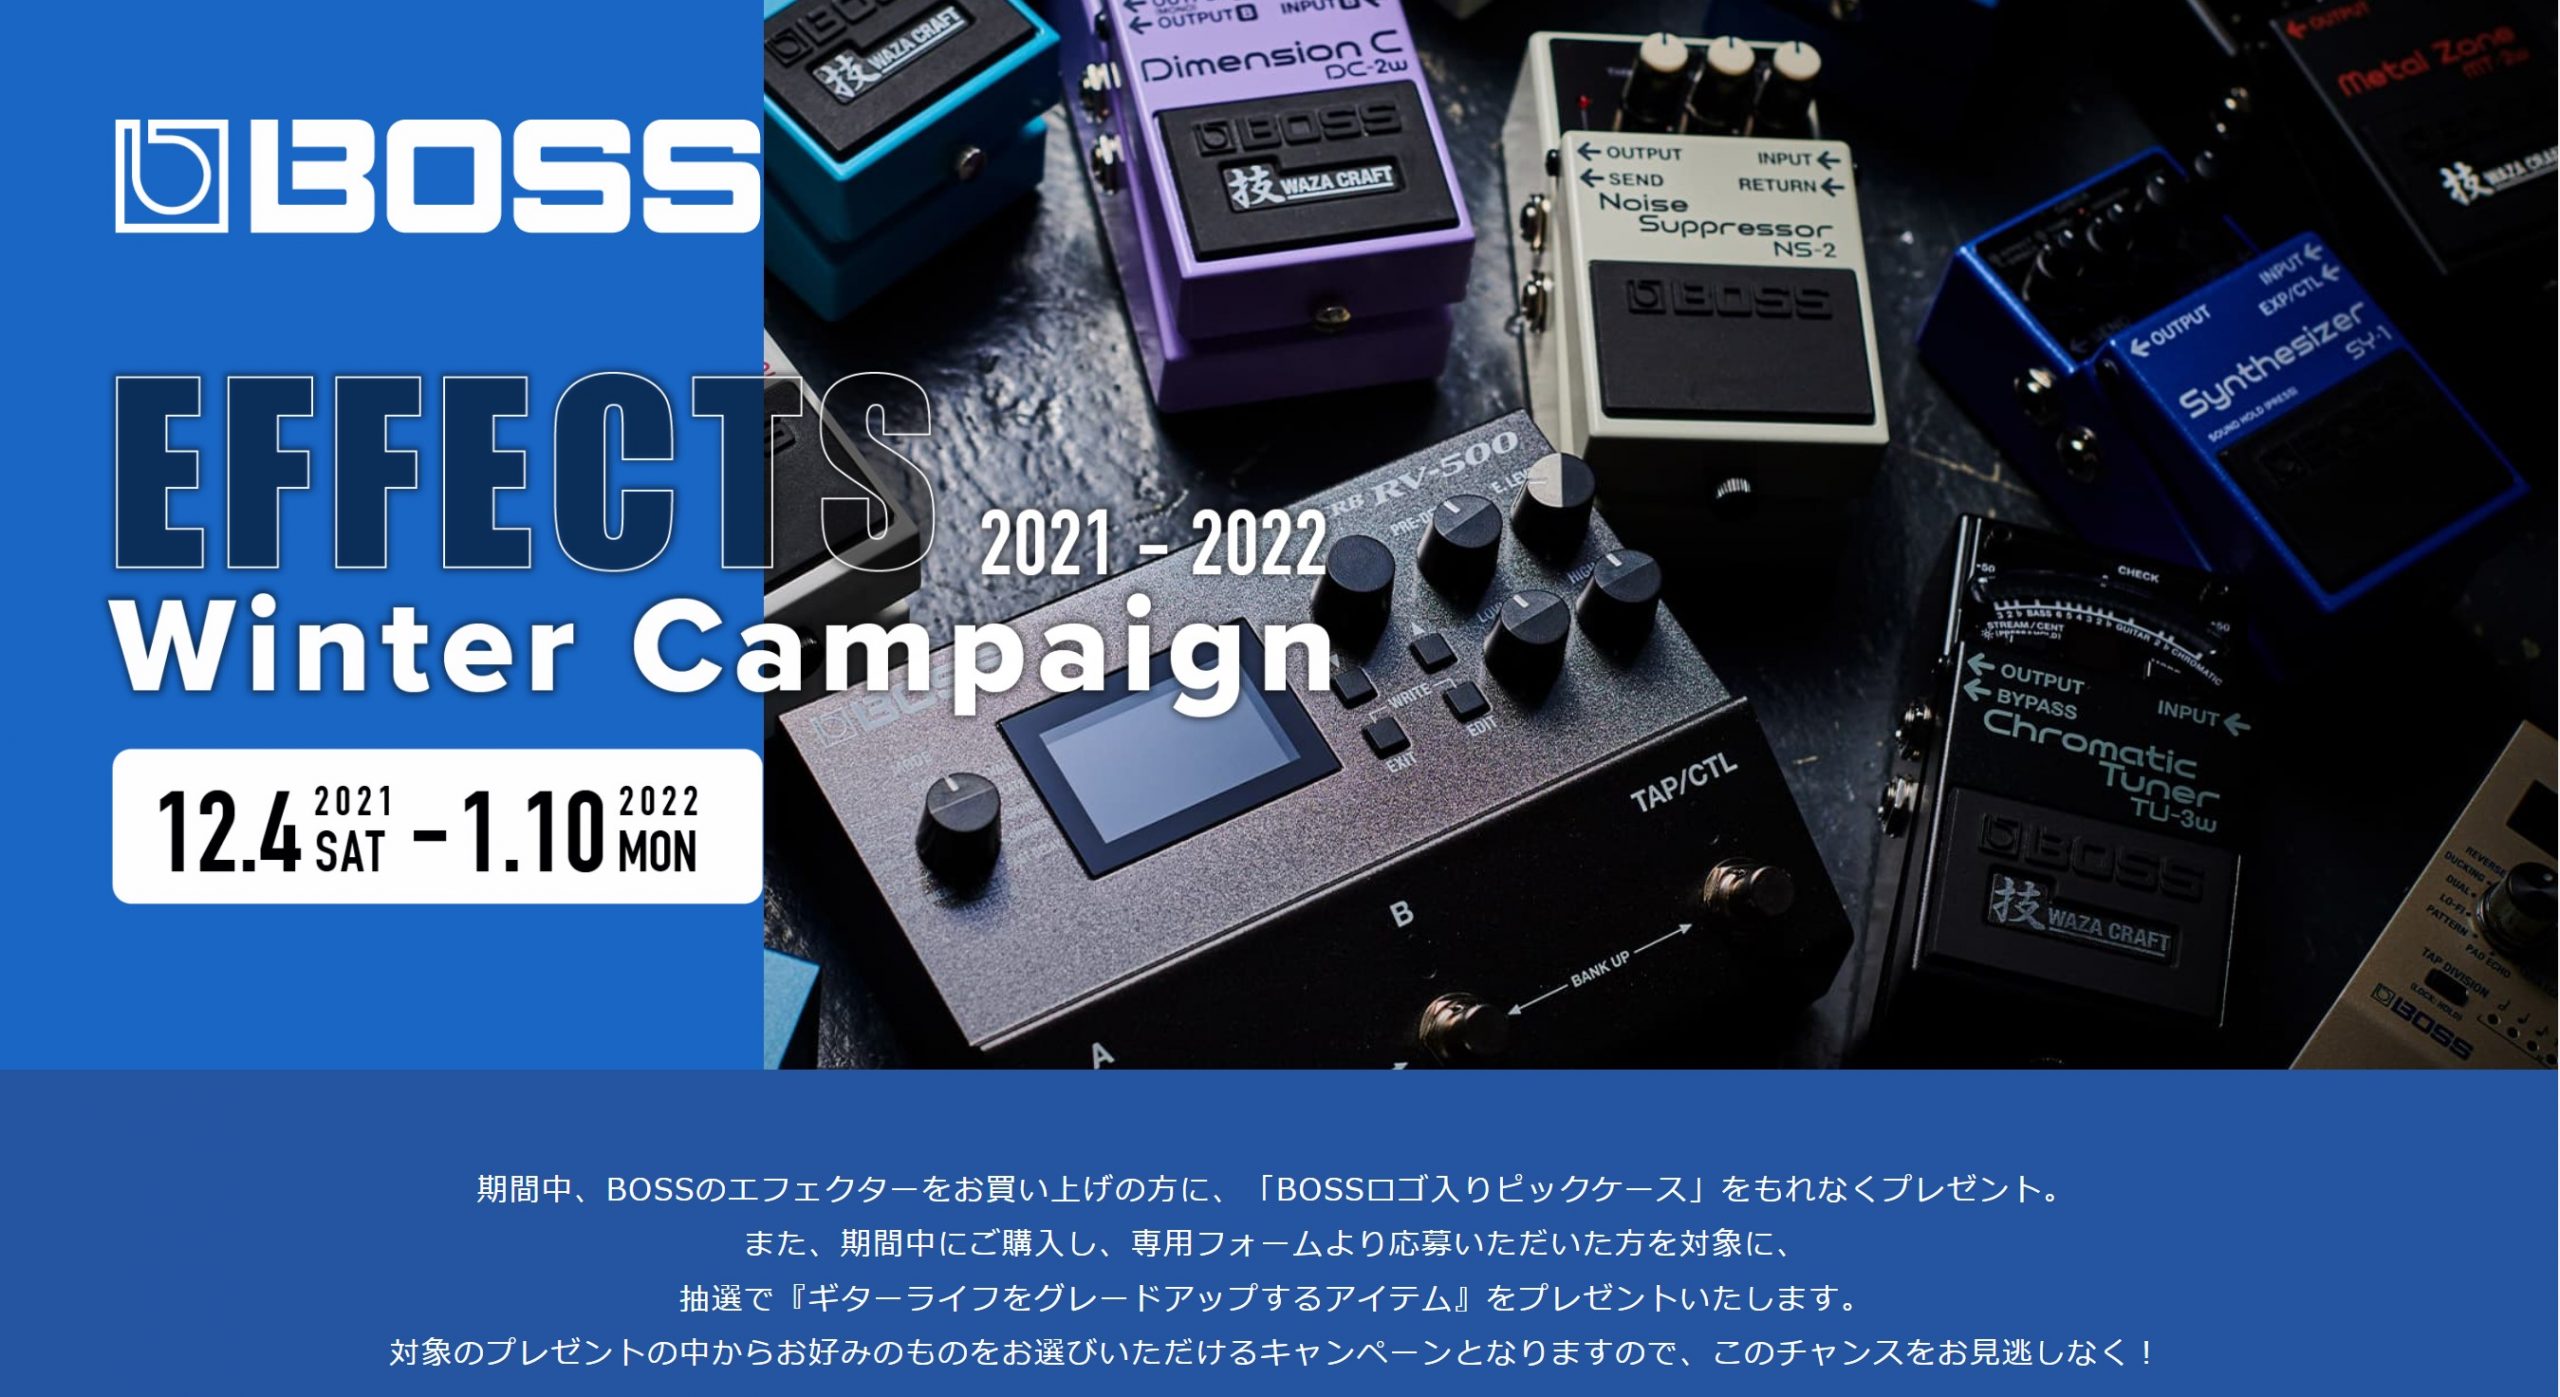 【BOSSキャンペーン】BOSS Effects Winter Campaign2021-2022